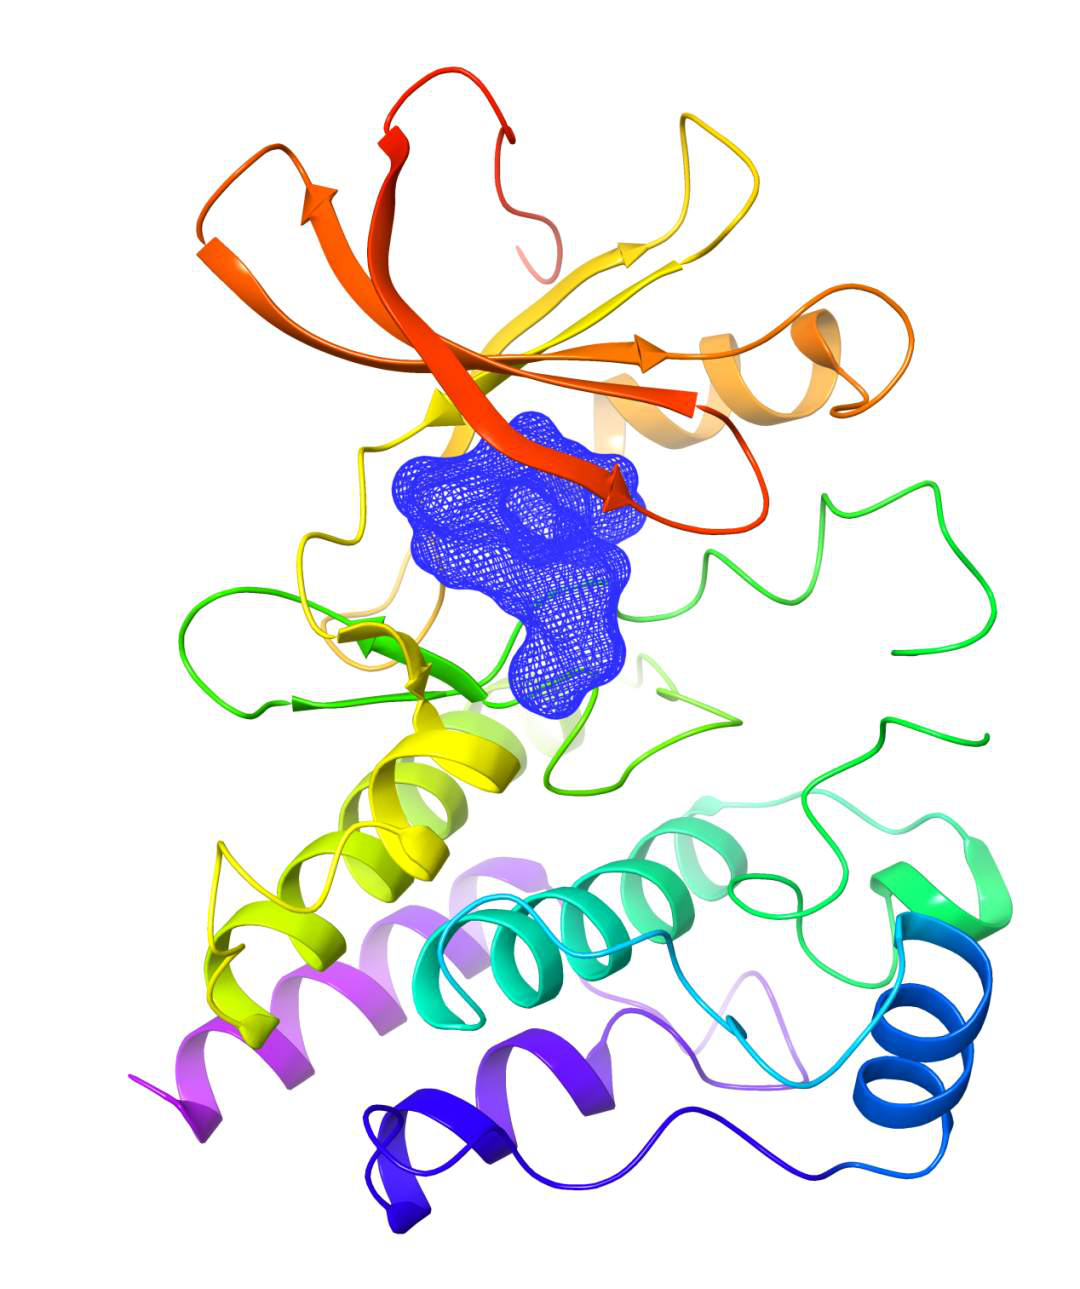 泽布替尼与BTK蛋白复合物晶体结构示意图